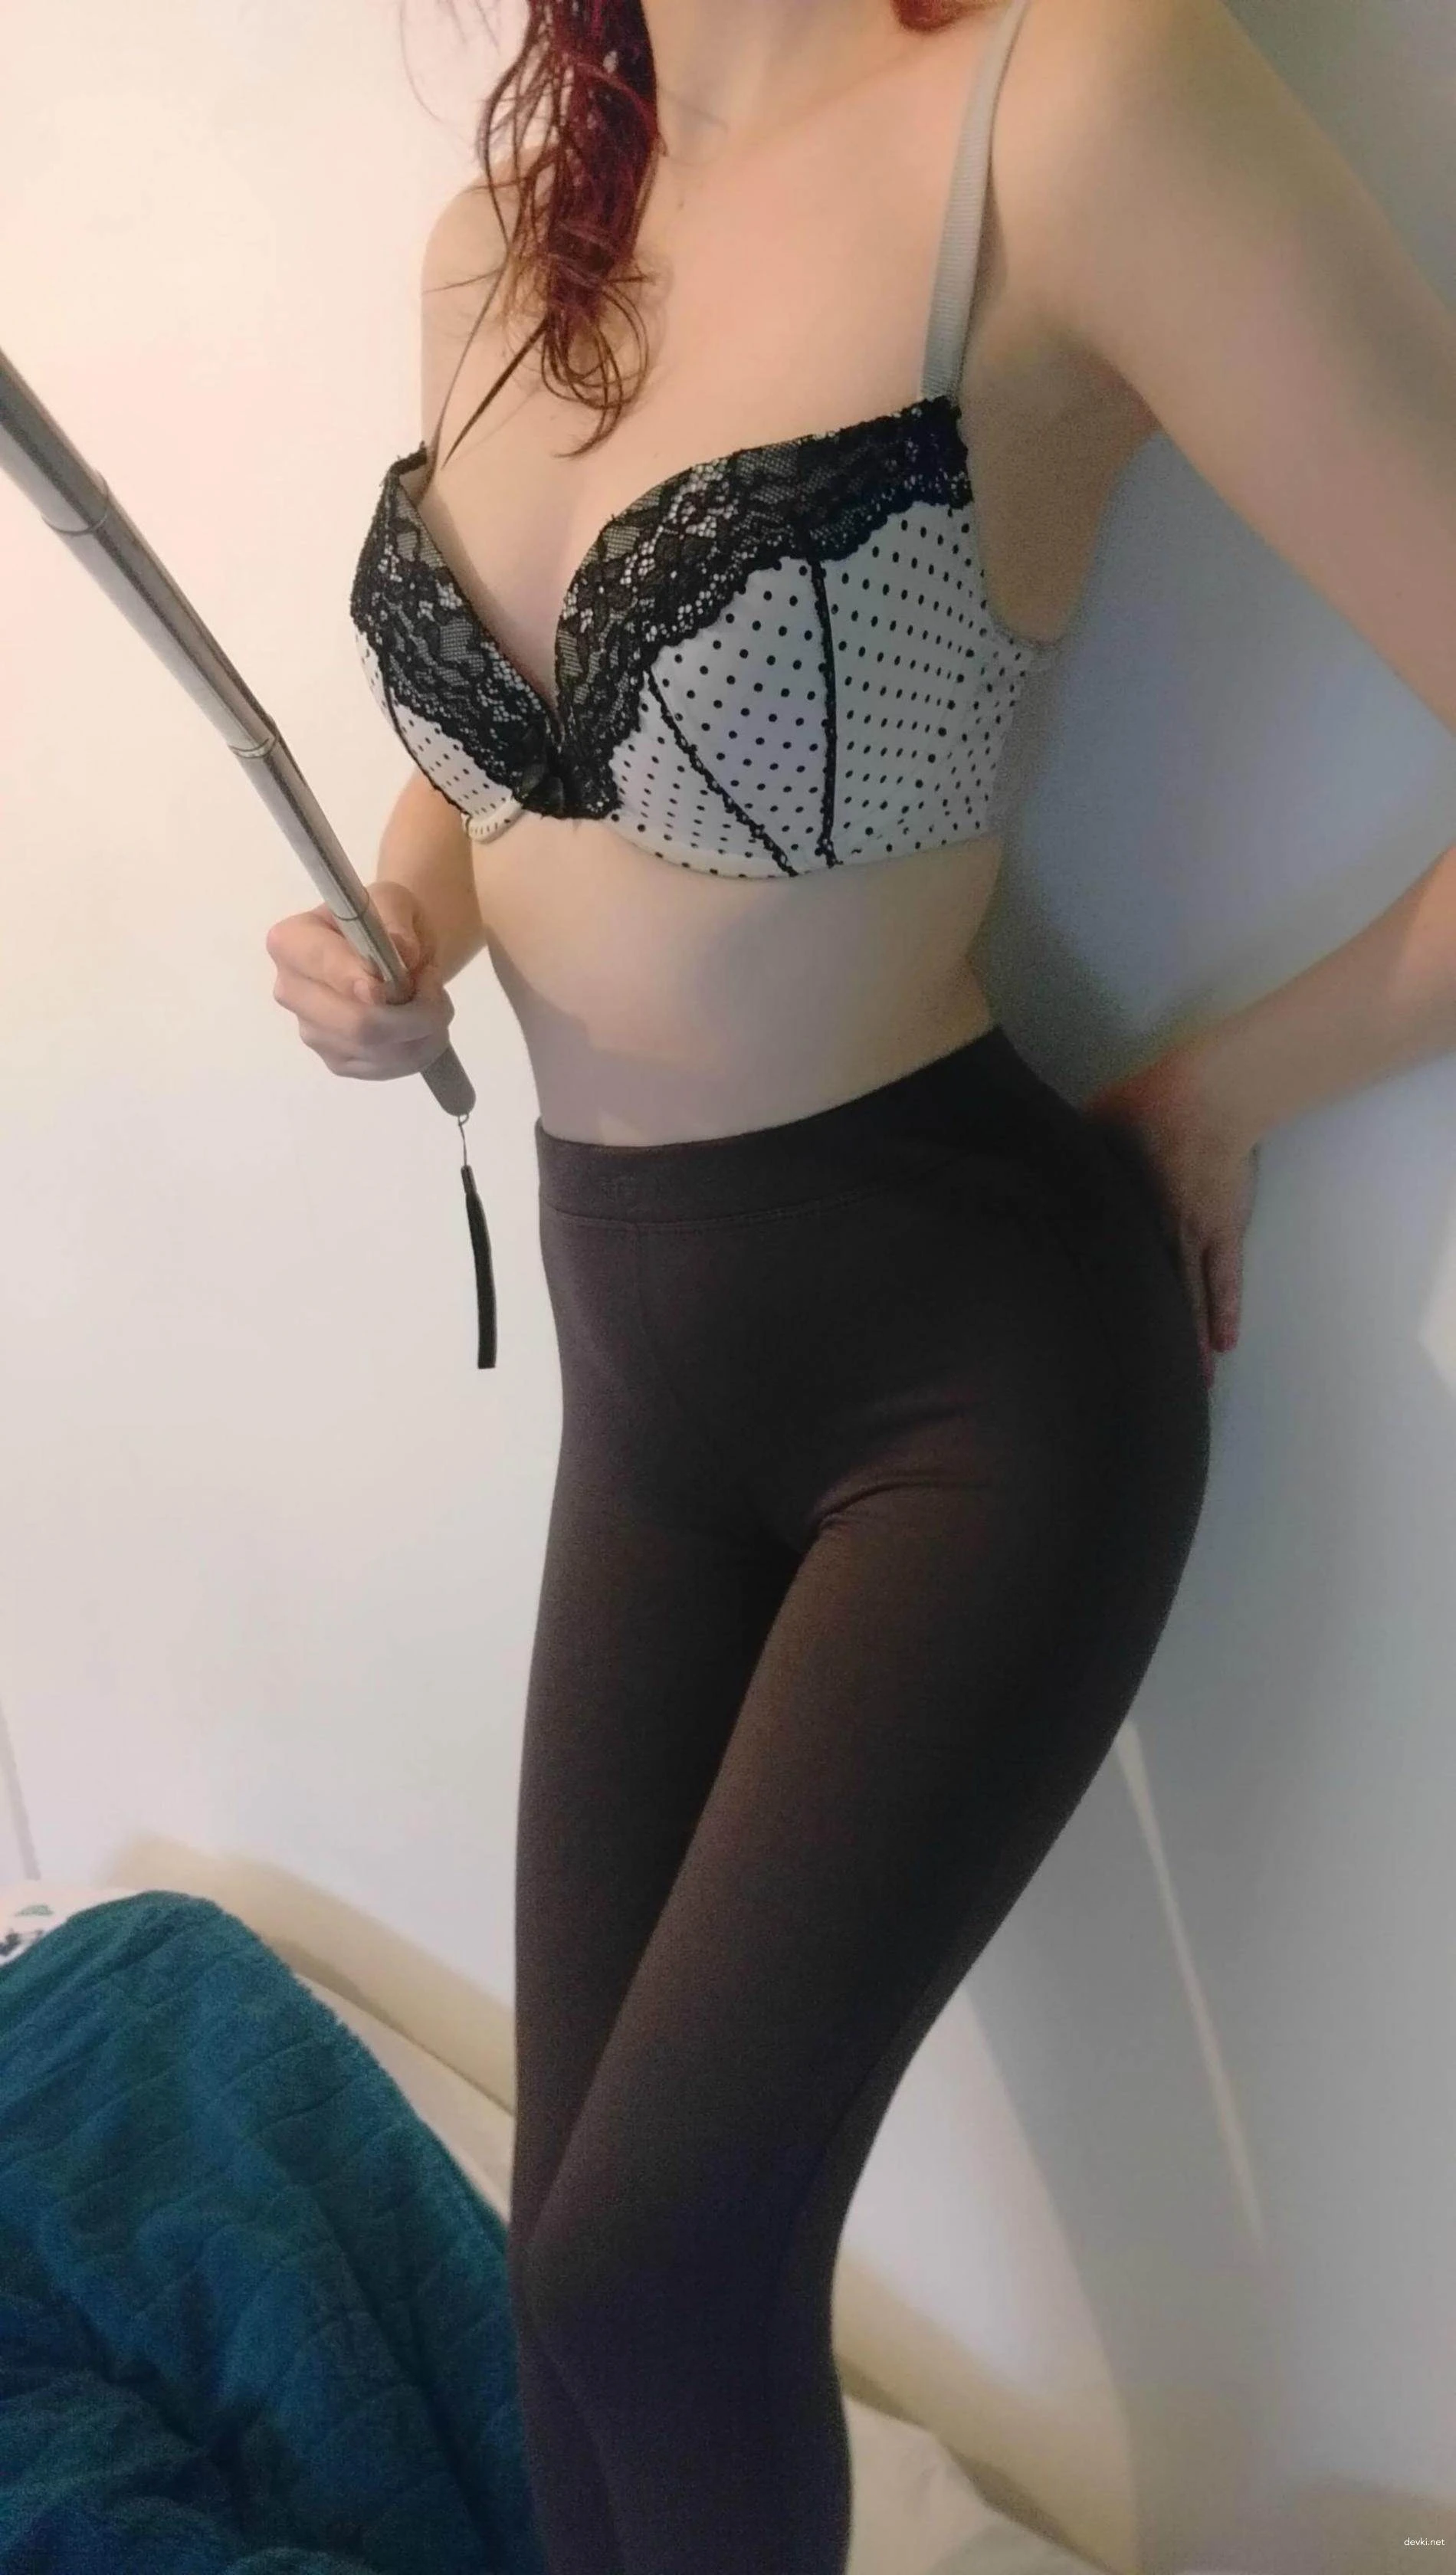 Private porn photo of a girl in leggings who masturbates